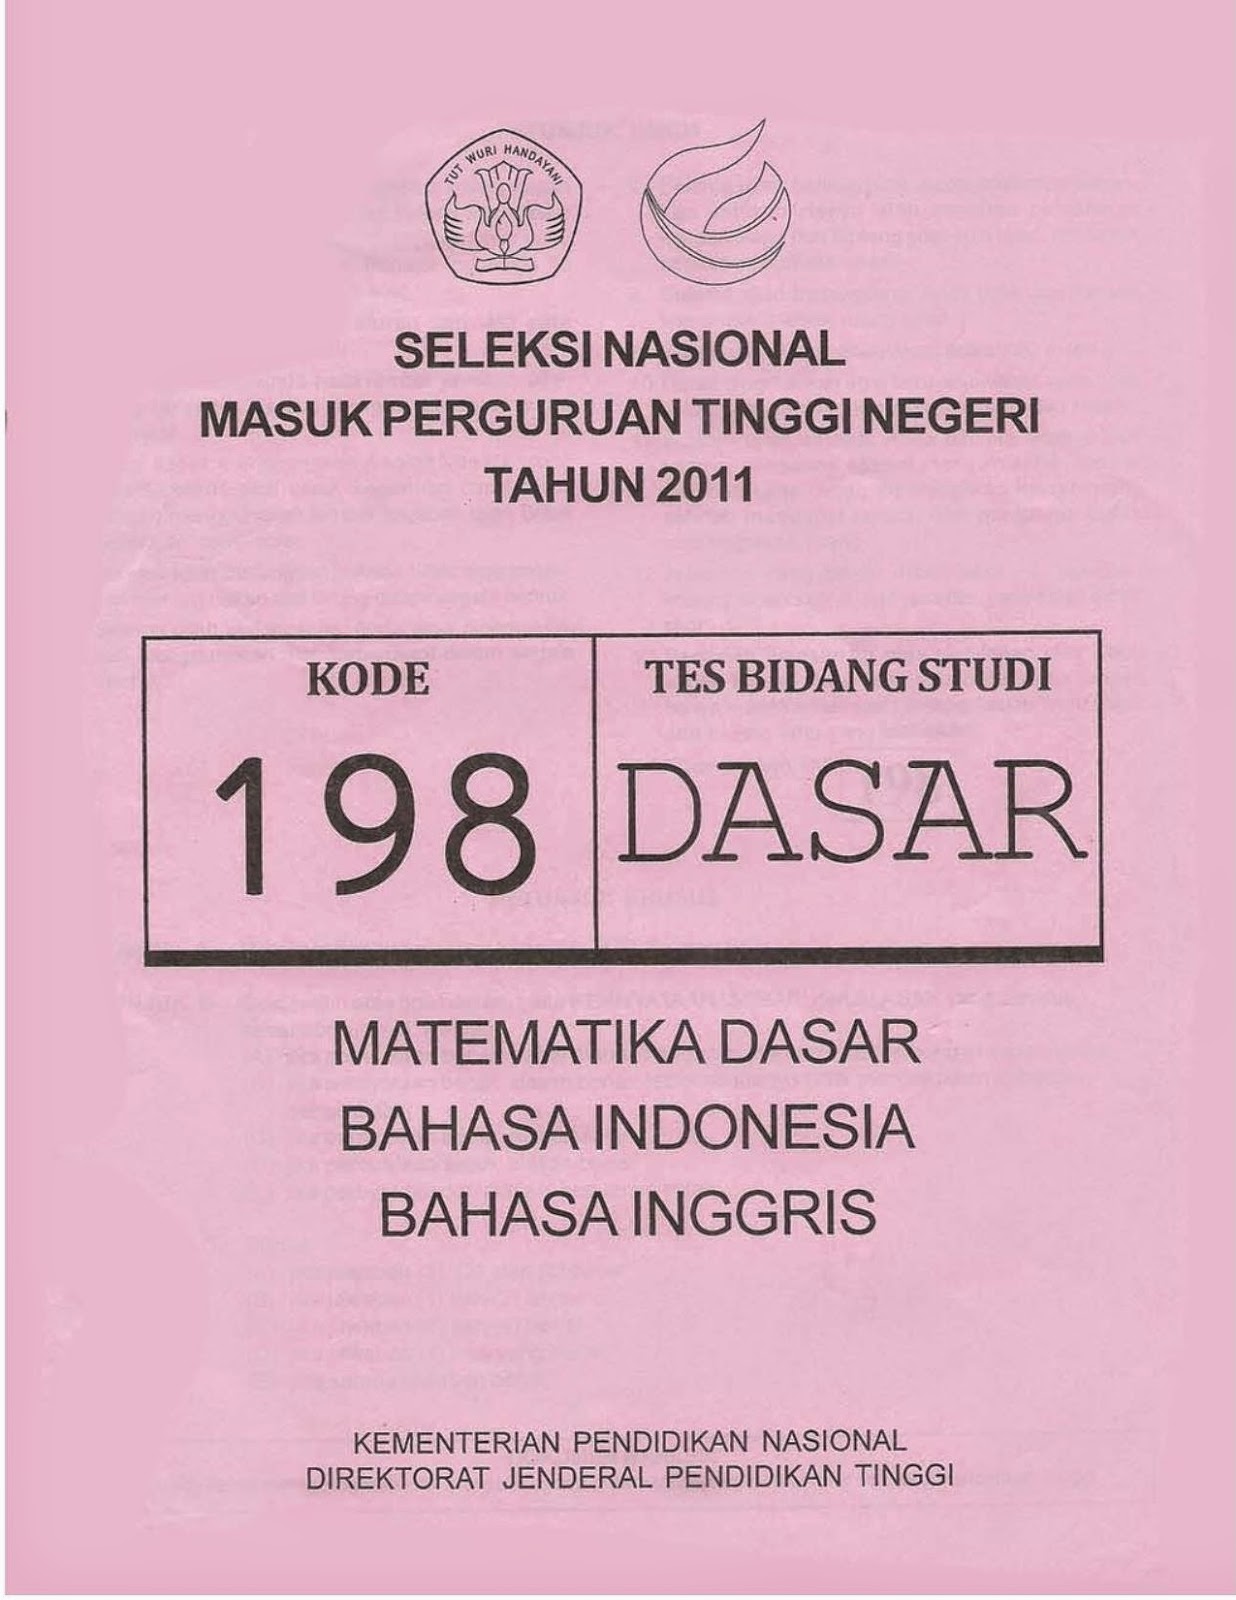 Dan pada kesempatan kali ini Pak Anang menyuguhkan file Naskah Soal SNMPTN 2011 Tes Bidang Studi Dasar Kode Soal 198 Matematika Dasar Bahasa Indonesia